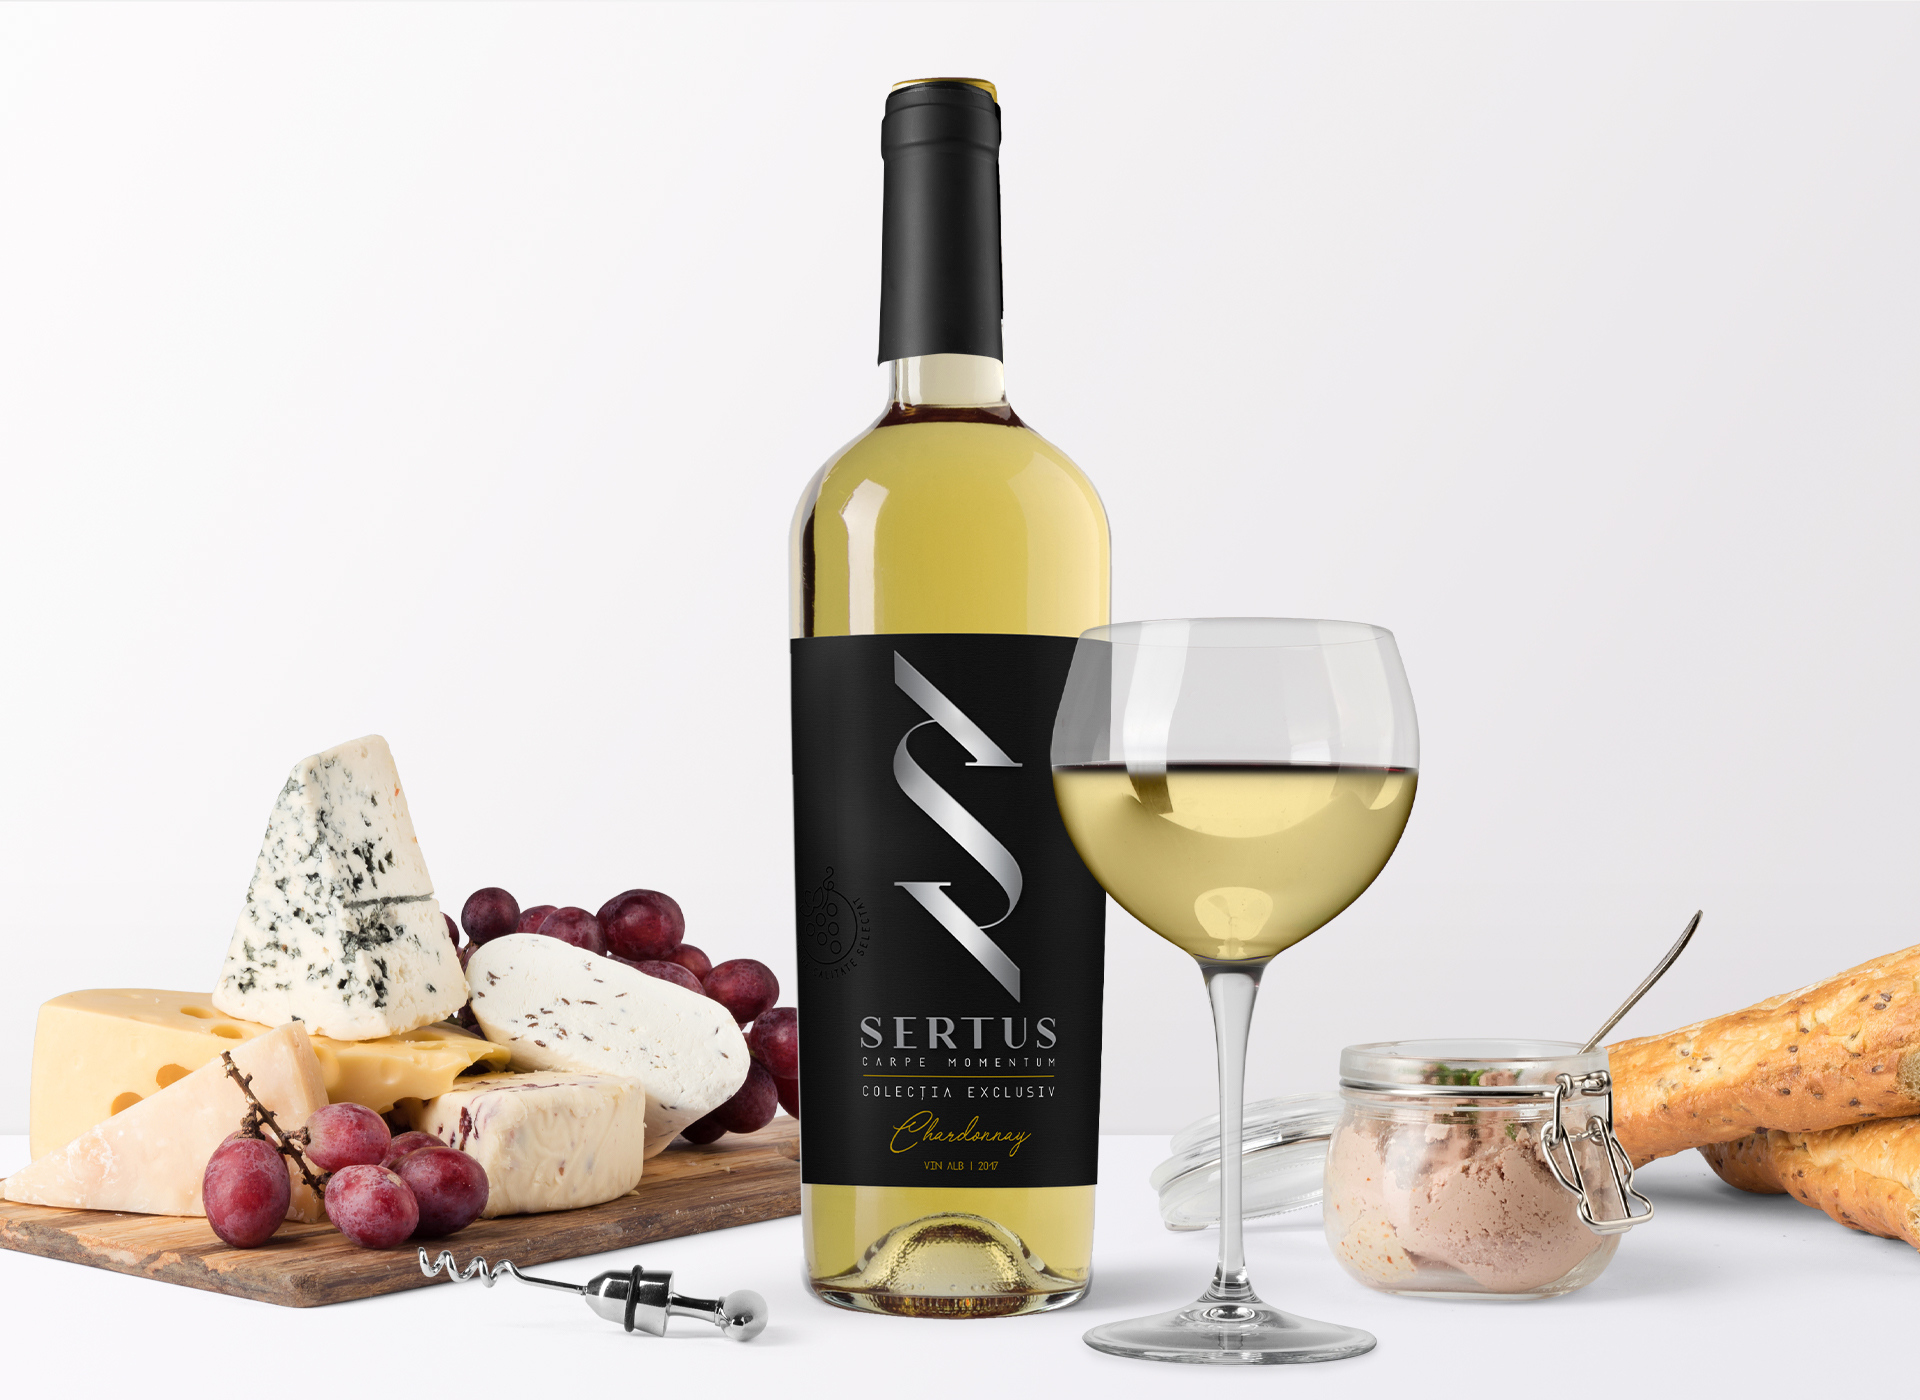 Sertus wine products branding inoveo